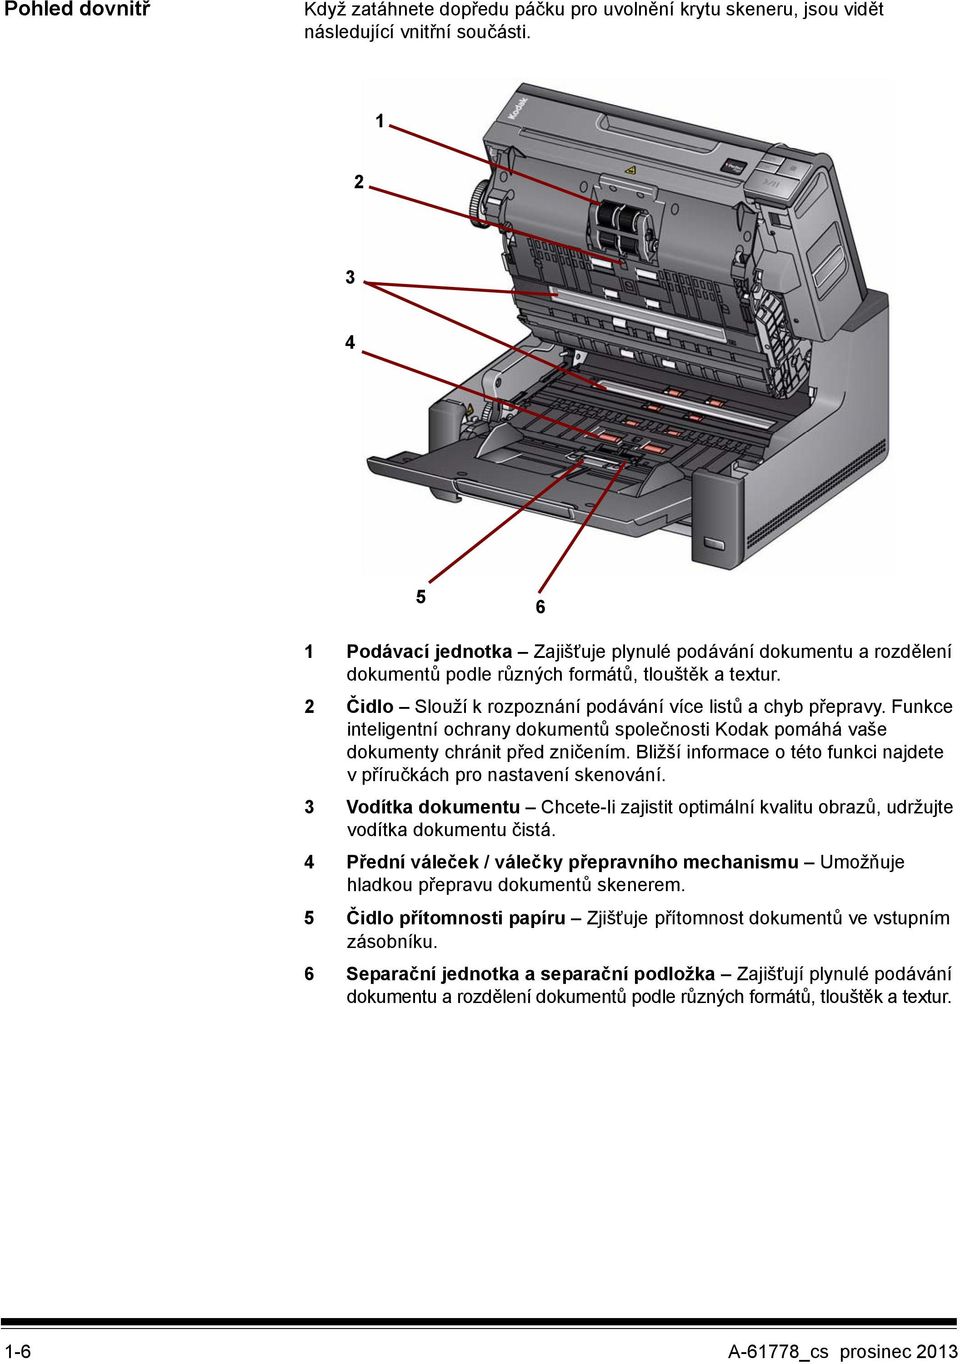 Funkce inteligentní ochrany dokumentů společnosti Kodak pomáhá vaše dokumenty chránit před zničením. Bližší informace o této funkci najdete v příručkách pro nastavení skenování.